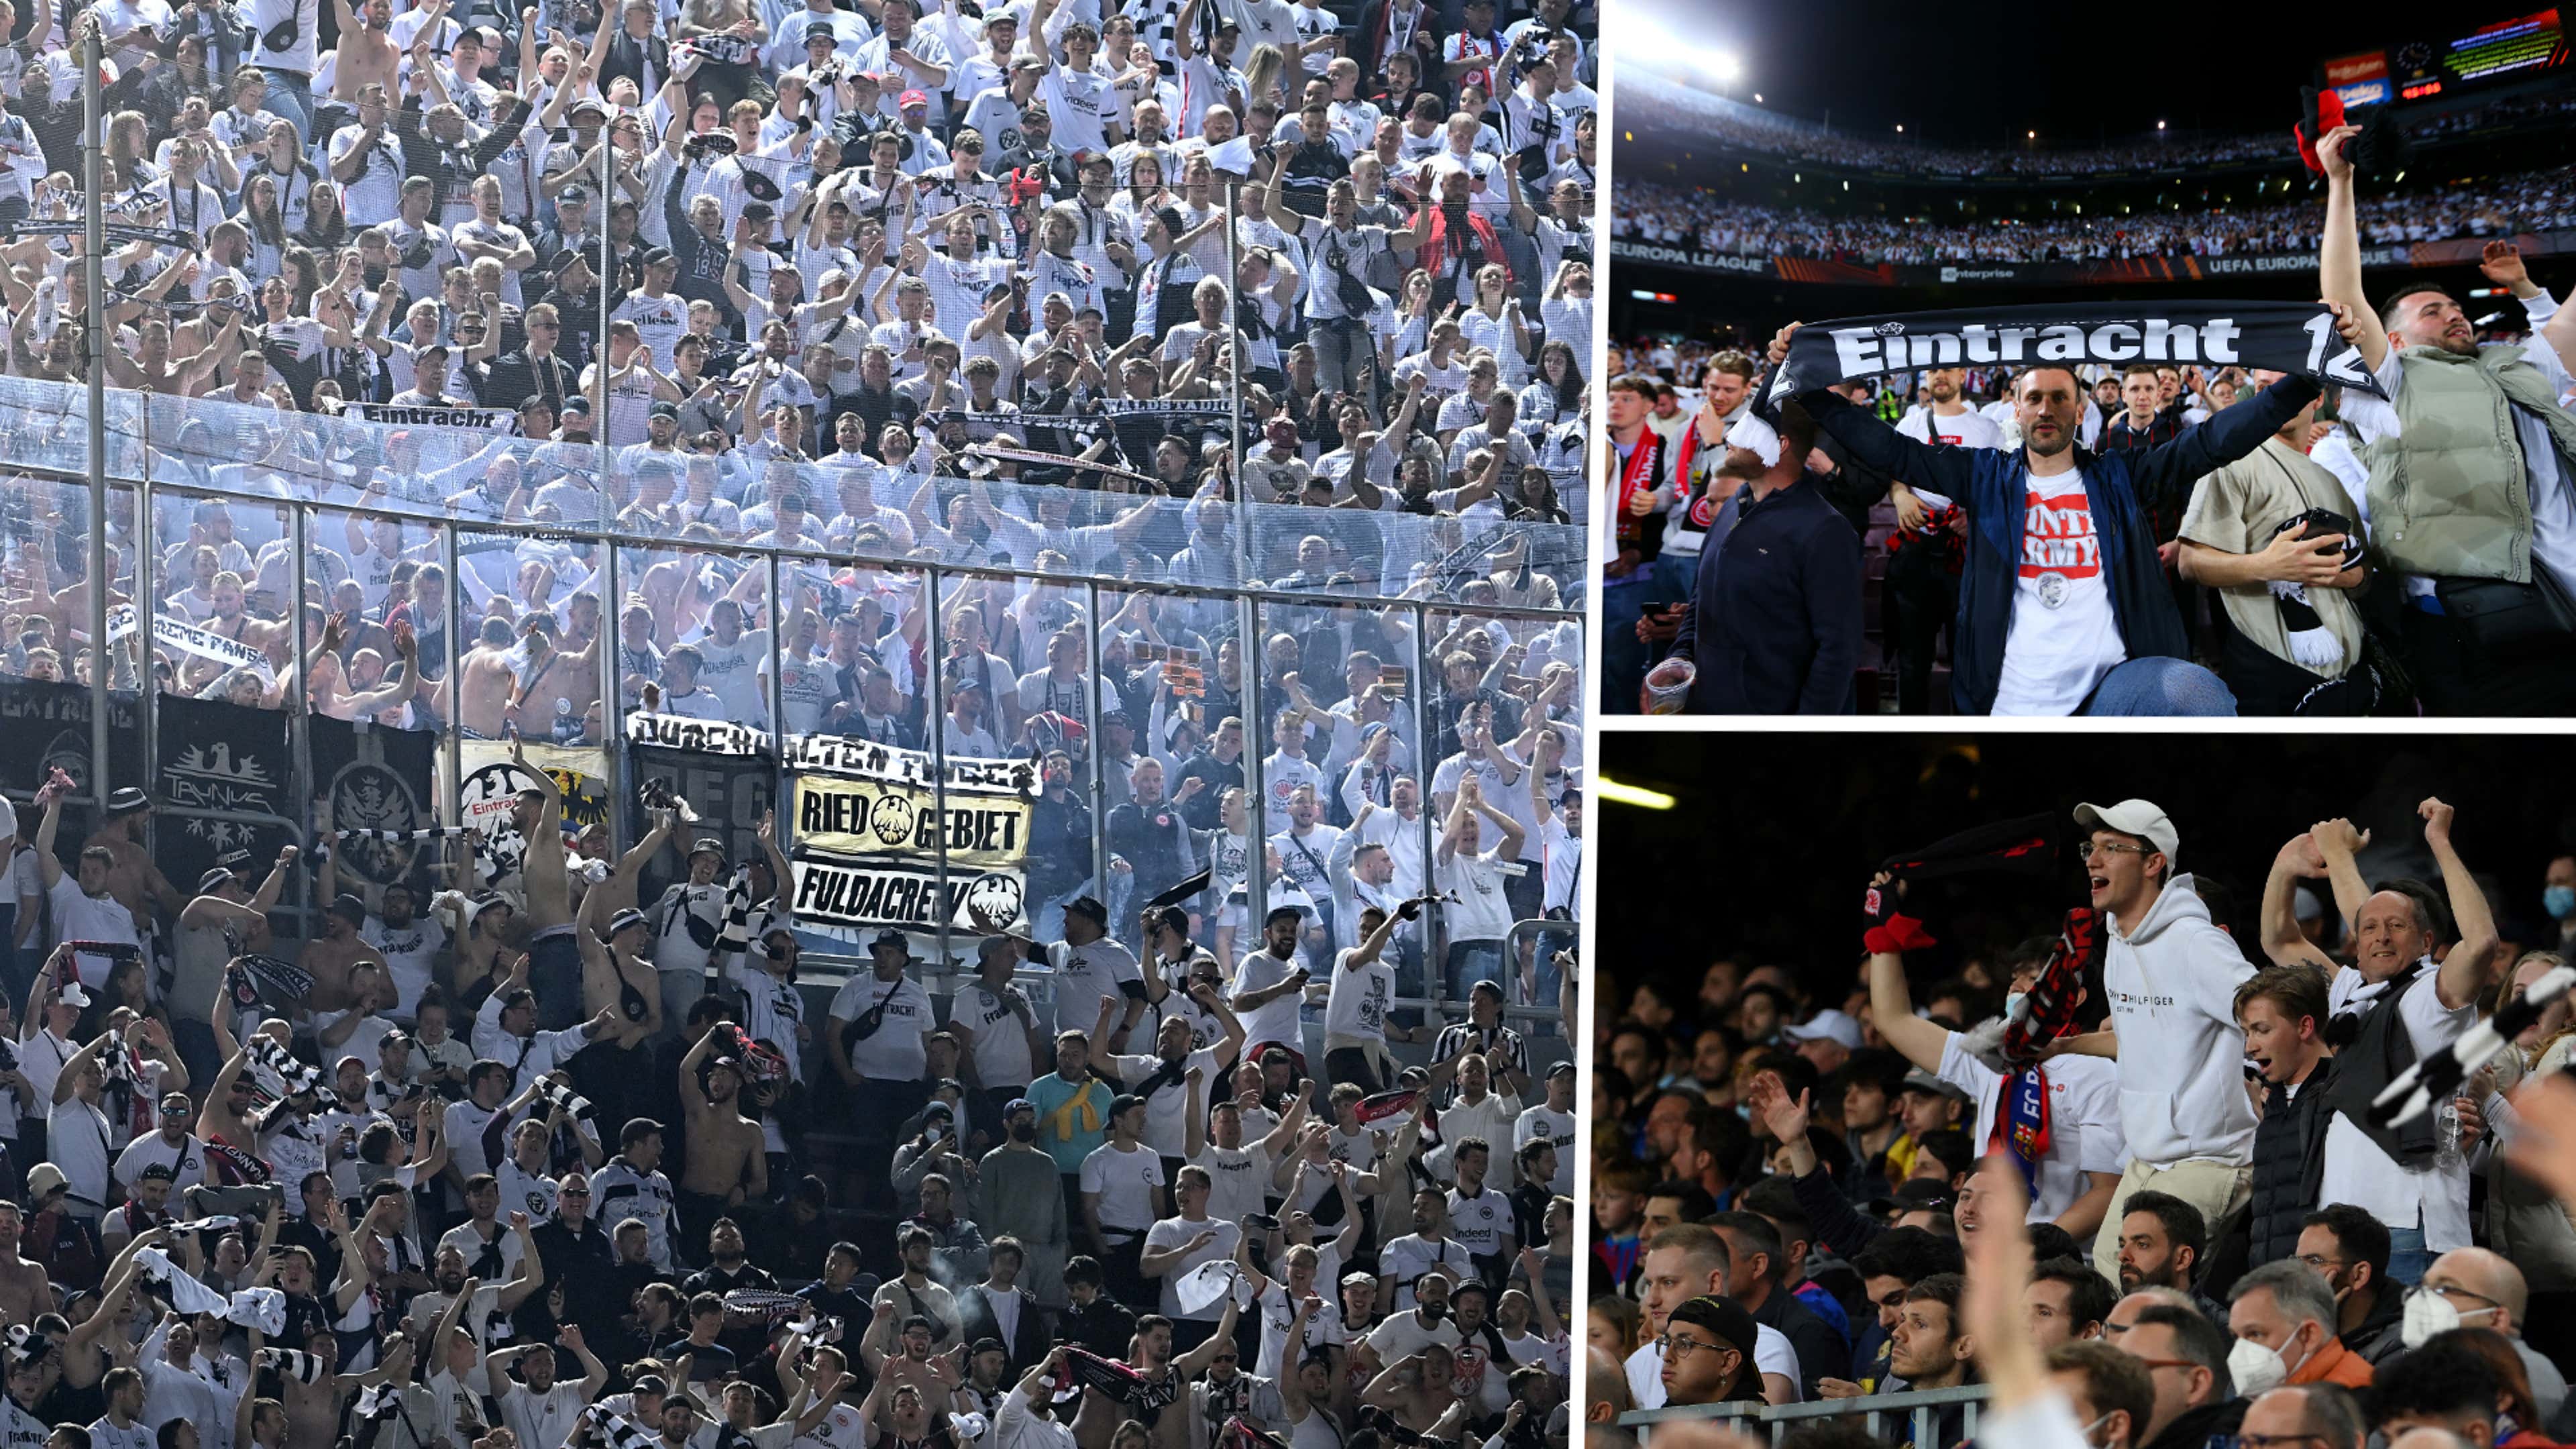 Galería: aficionados del Eintracht Frankfurt toman el Camp Nou y montan una fiesta en Barcelona